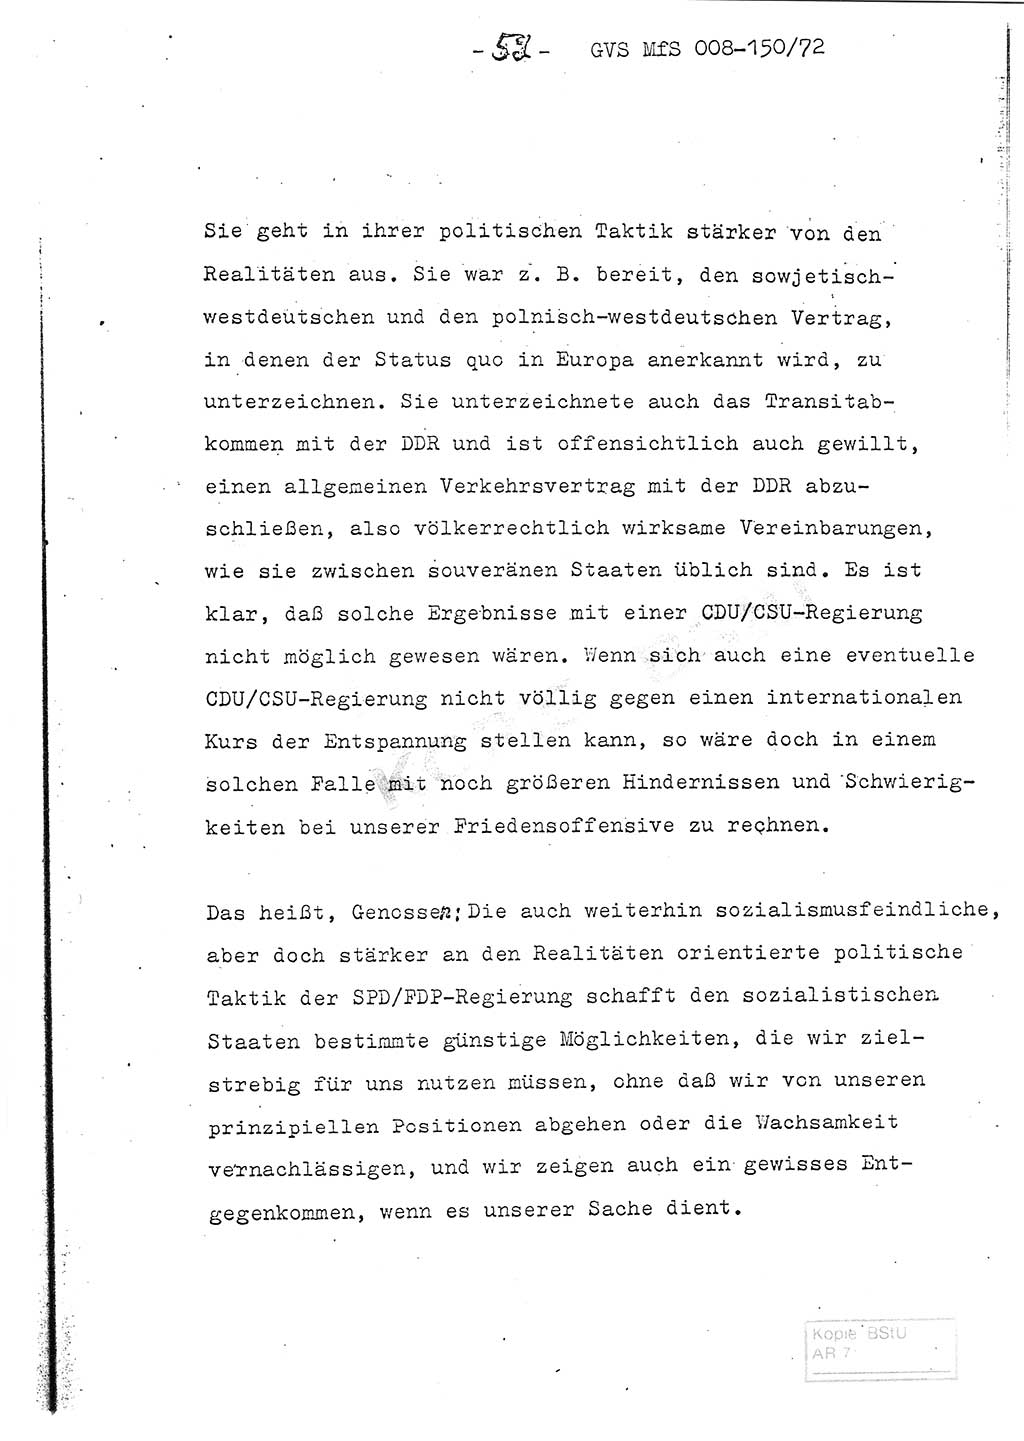 Referat (Entwurf) des Genossen Minister (Generaloberst Erich Mielke) auf der Dienstkonferenz 1972, Ministerium für Staatssicherheit (MfS) [Deutsche Demokratische Republik (DDR)], Der Minister, Geheime Verschlußsache (GVS) 008-150/72, Berlin 25.2.1972, Seite 52 (Ref. Entw. DK MfS DDR Min. GVS 008-150/72 1972, S. 52)